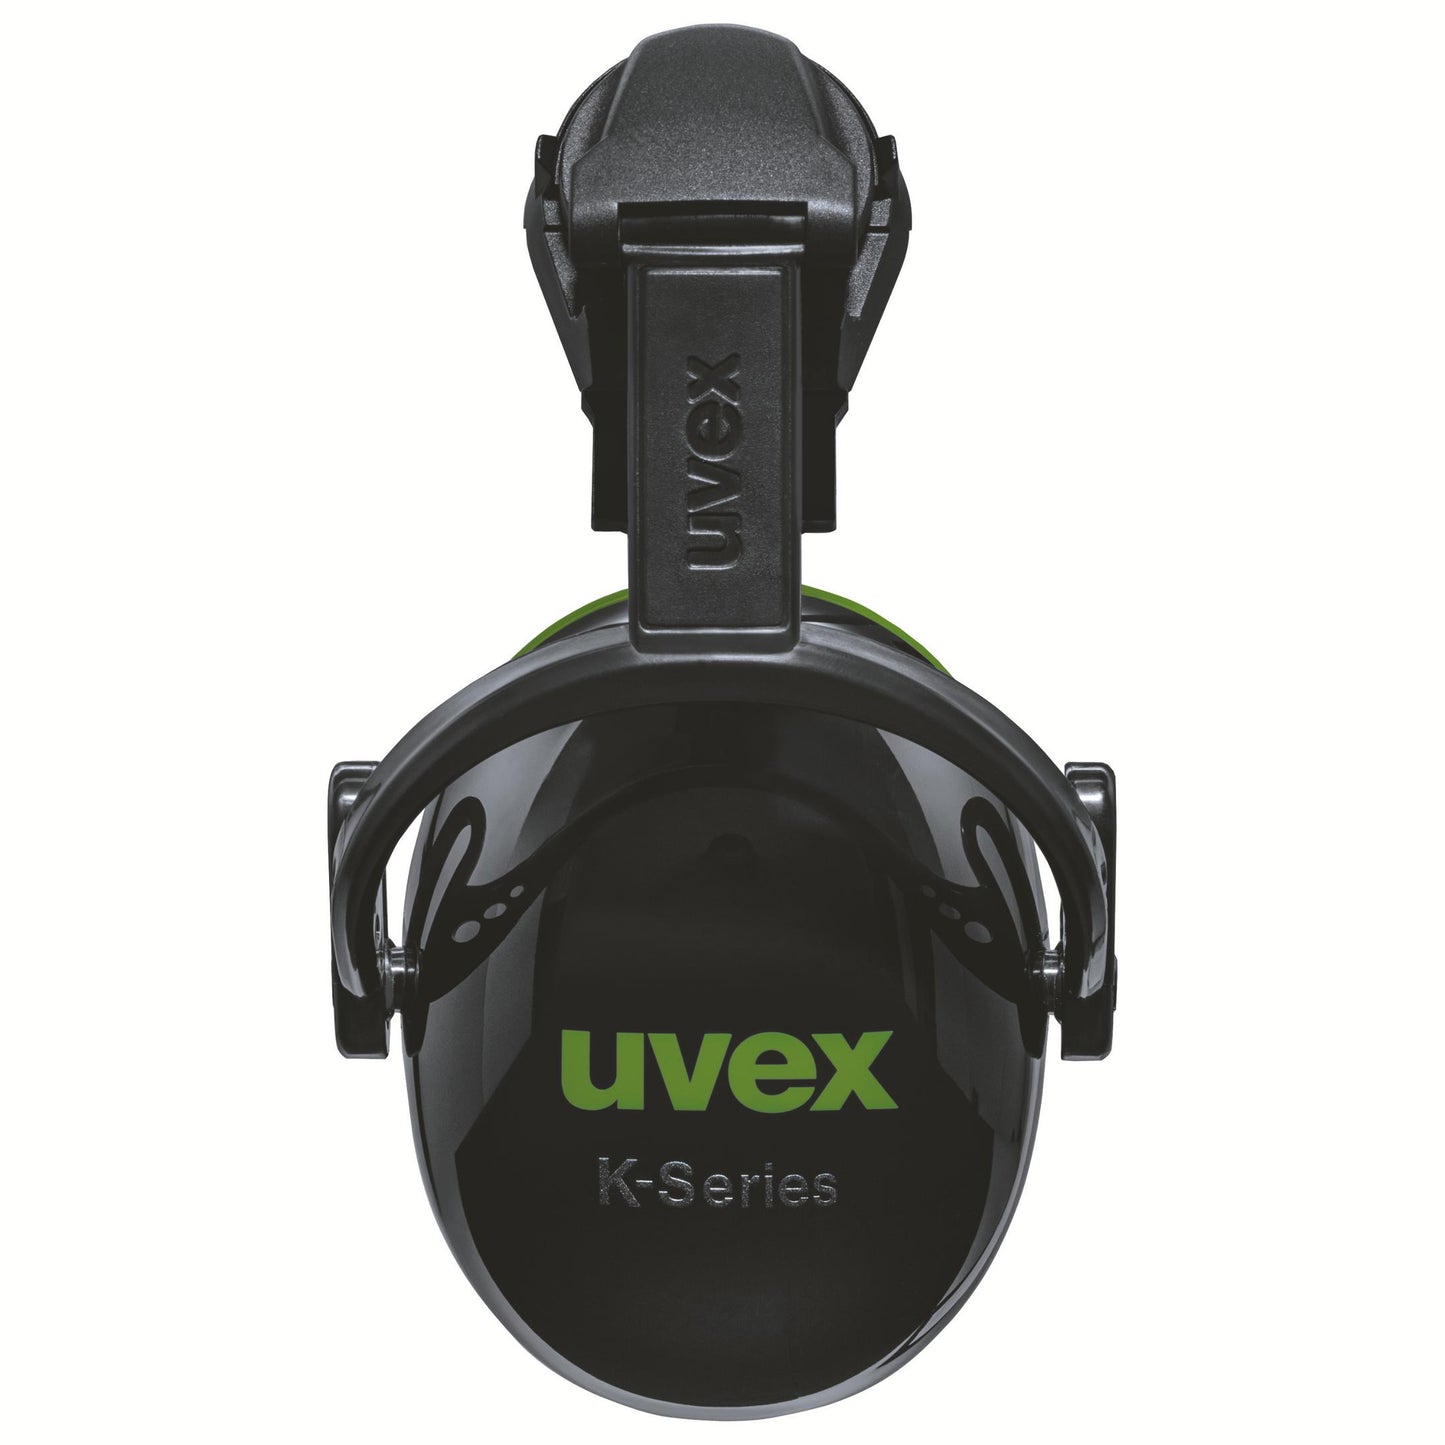 uvex K10H dielektrische Helmkapsel SNR 28 dB